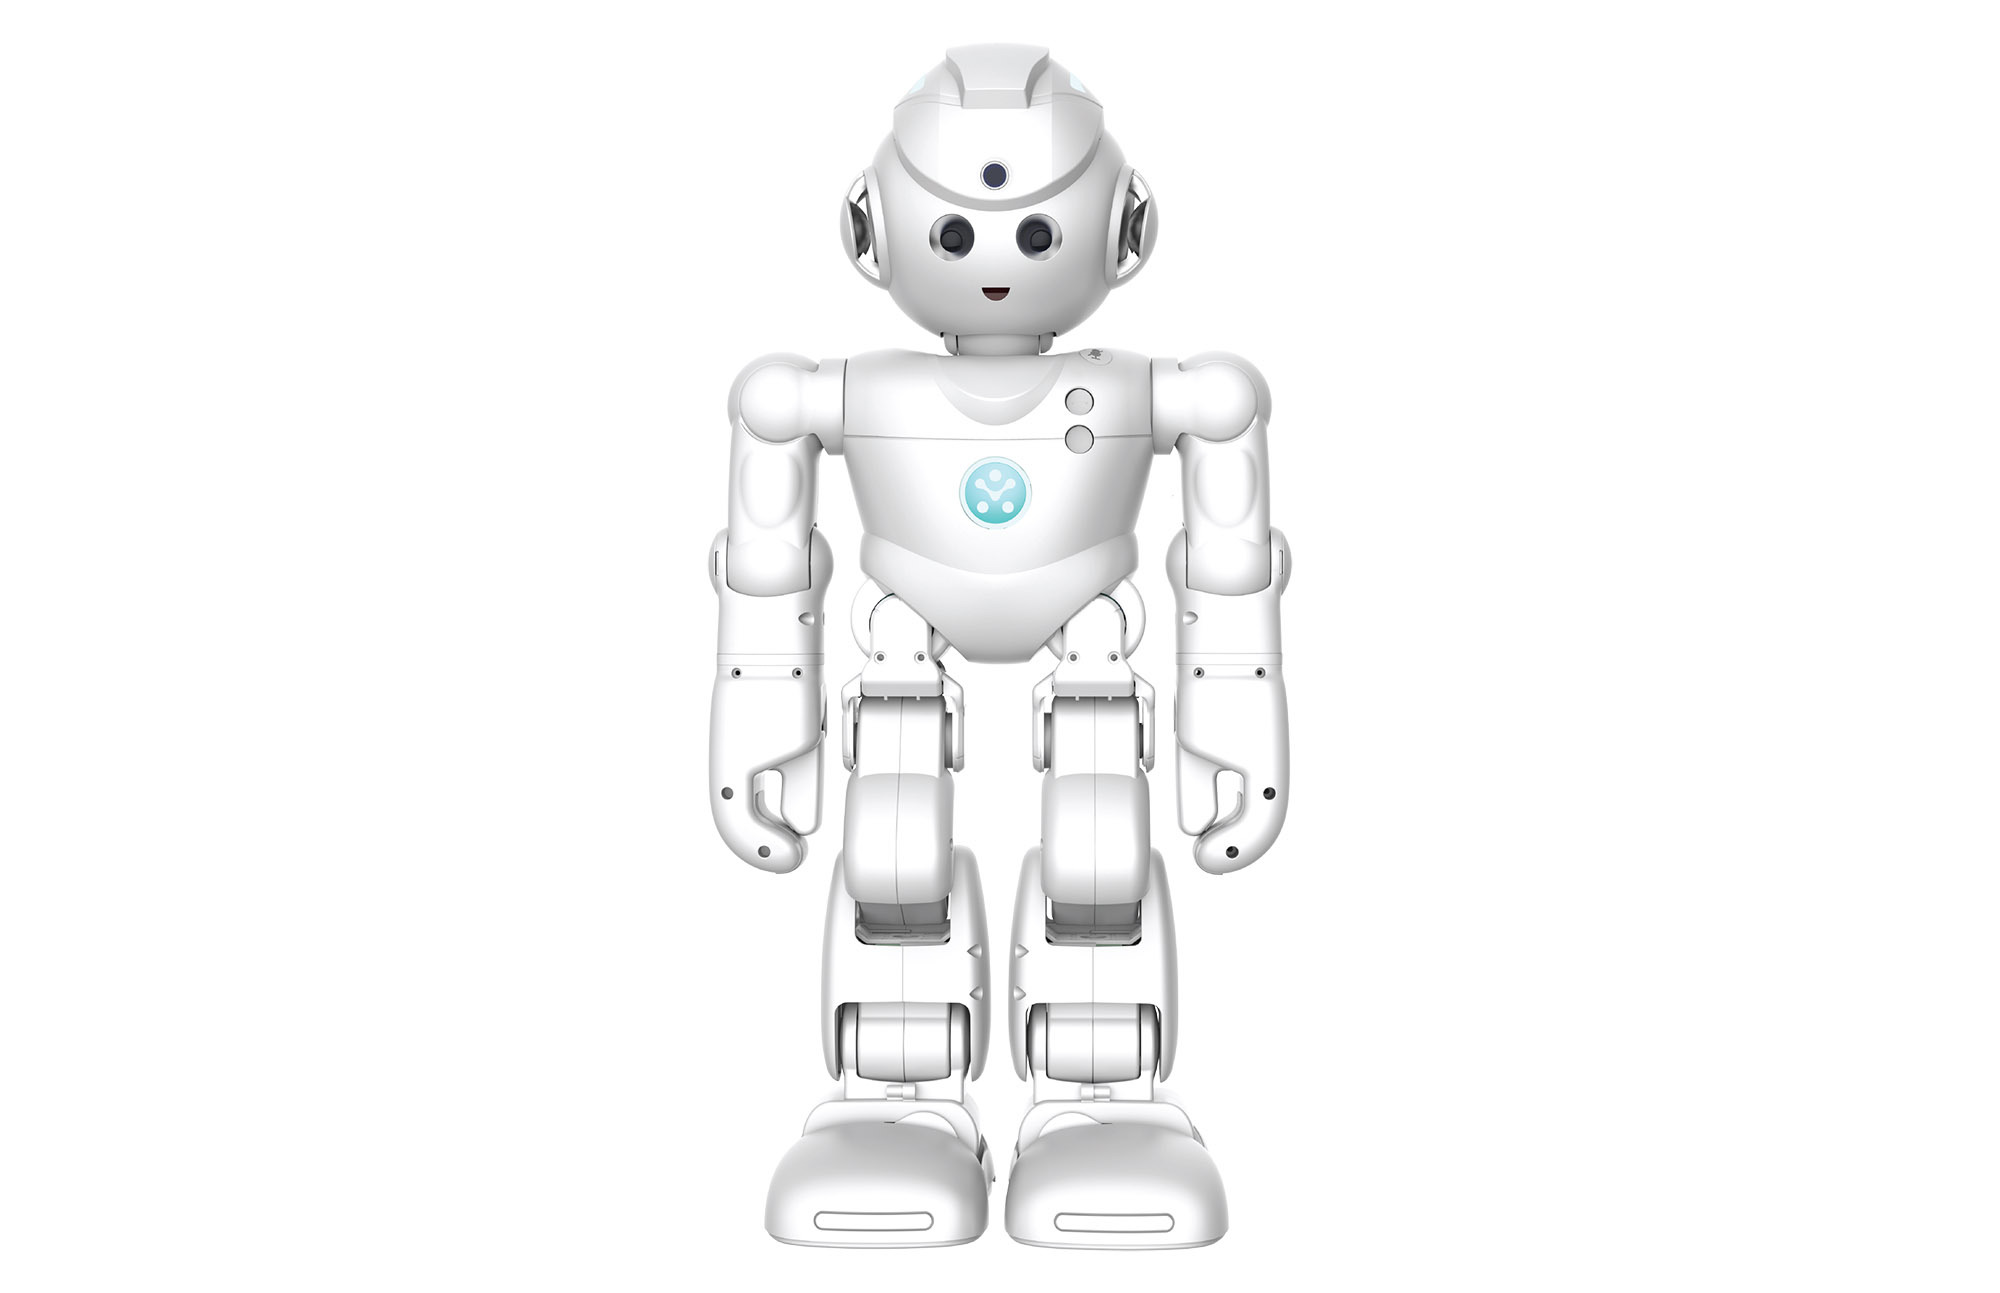 Humanoid Robot With Amazon Alexa 